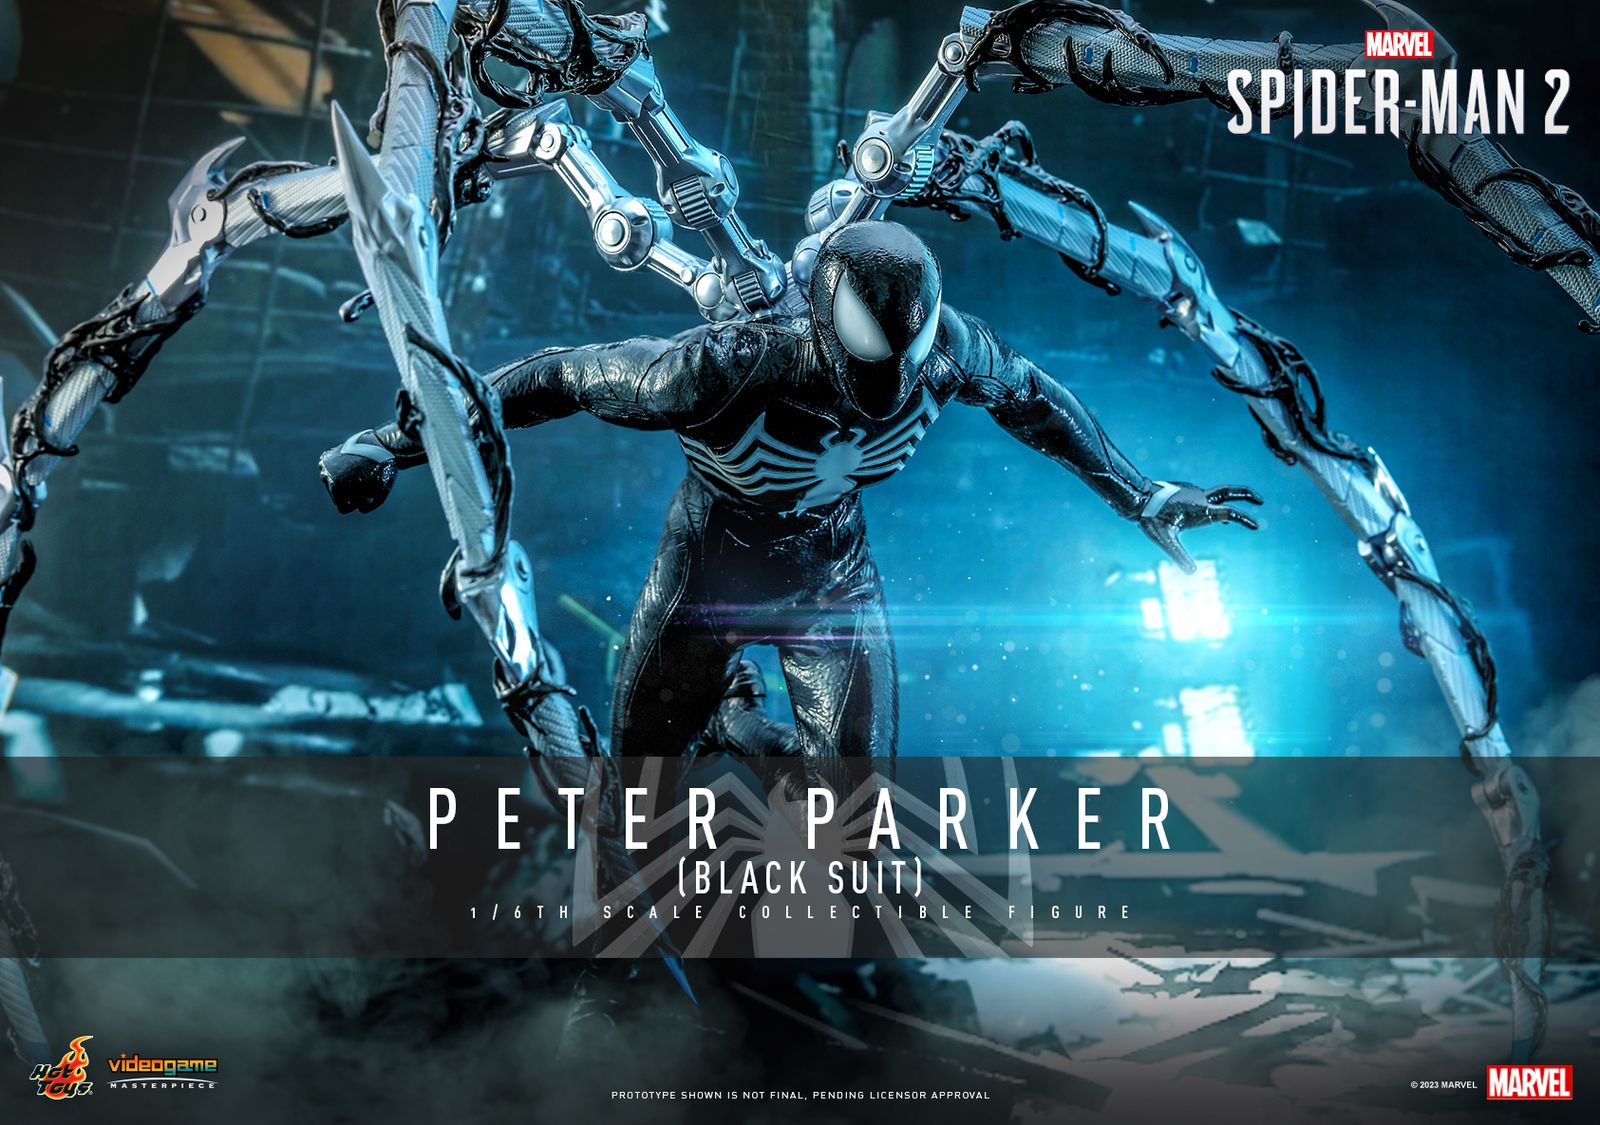 Symbiote Spider-Man from Marvel's Spider-Man 2